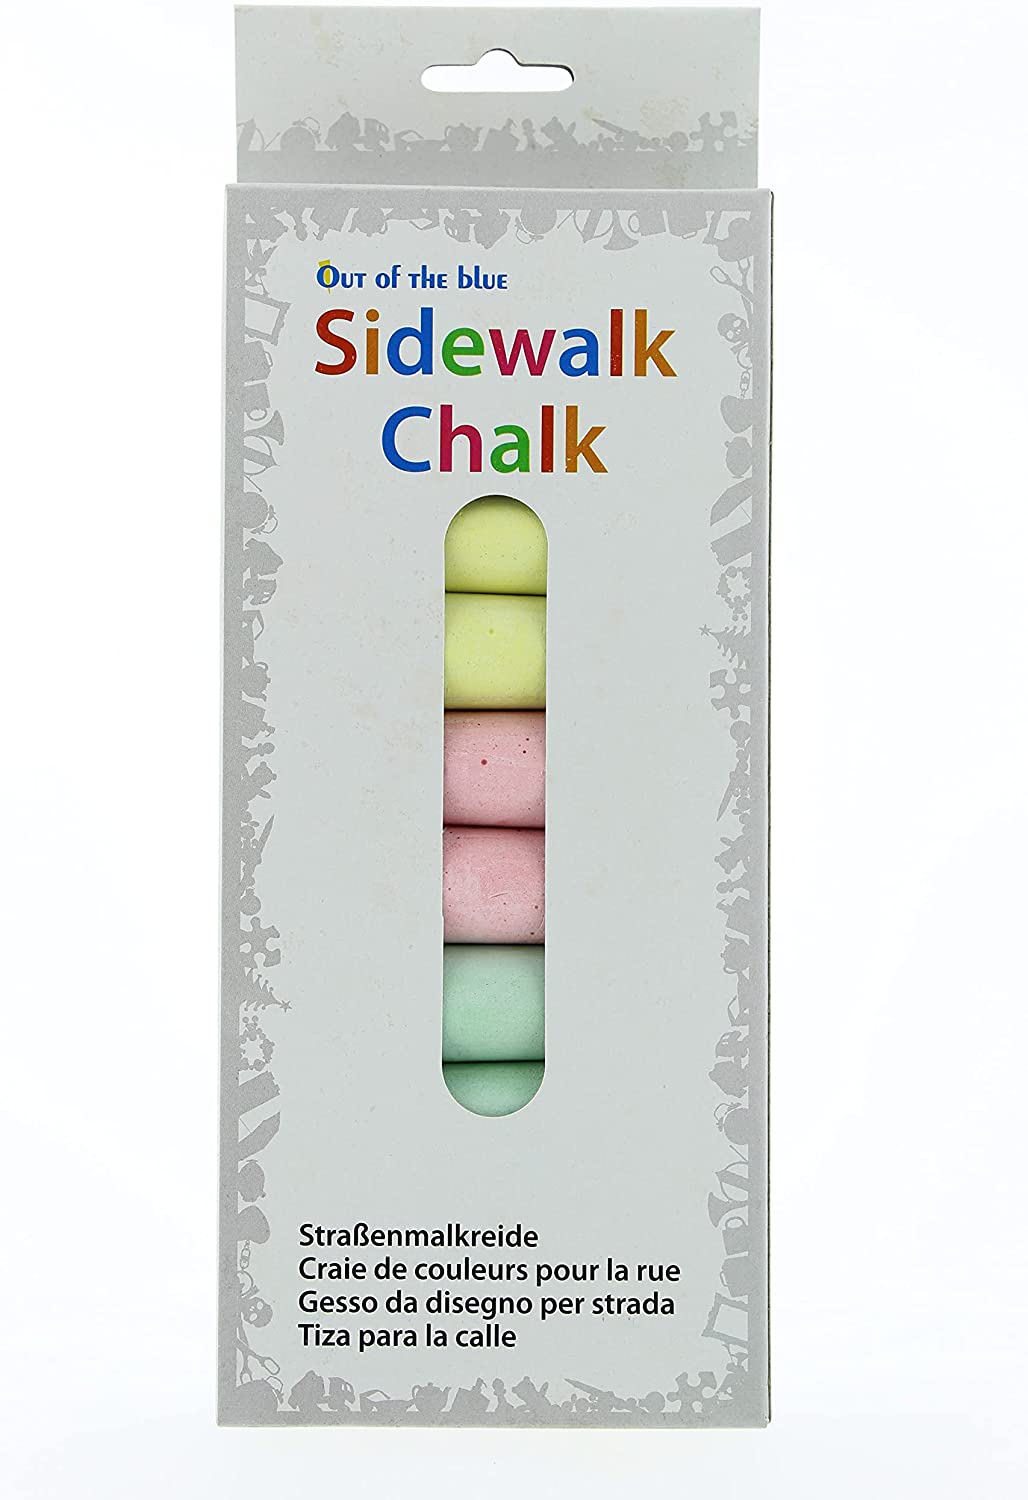 Sidewalk Chalk - Straßenkreide, Straßenmalkreide für Kinder, 5 Stangen, farbig sortiert, zum Bemalen von Asphalt und Pflasterflächen